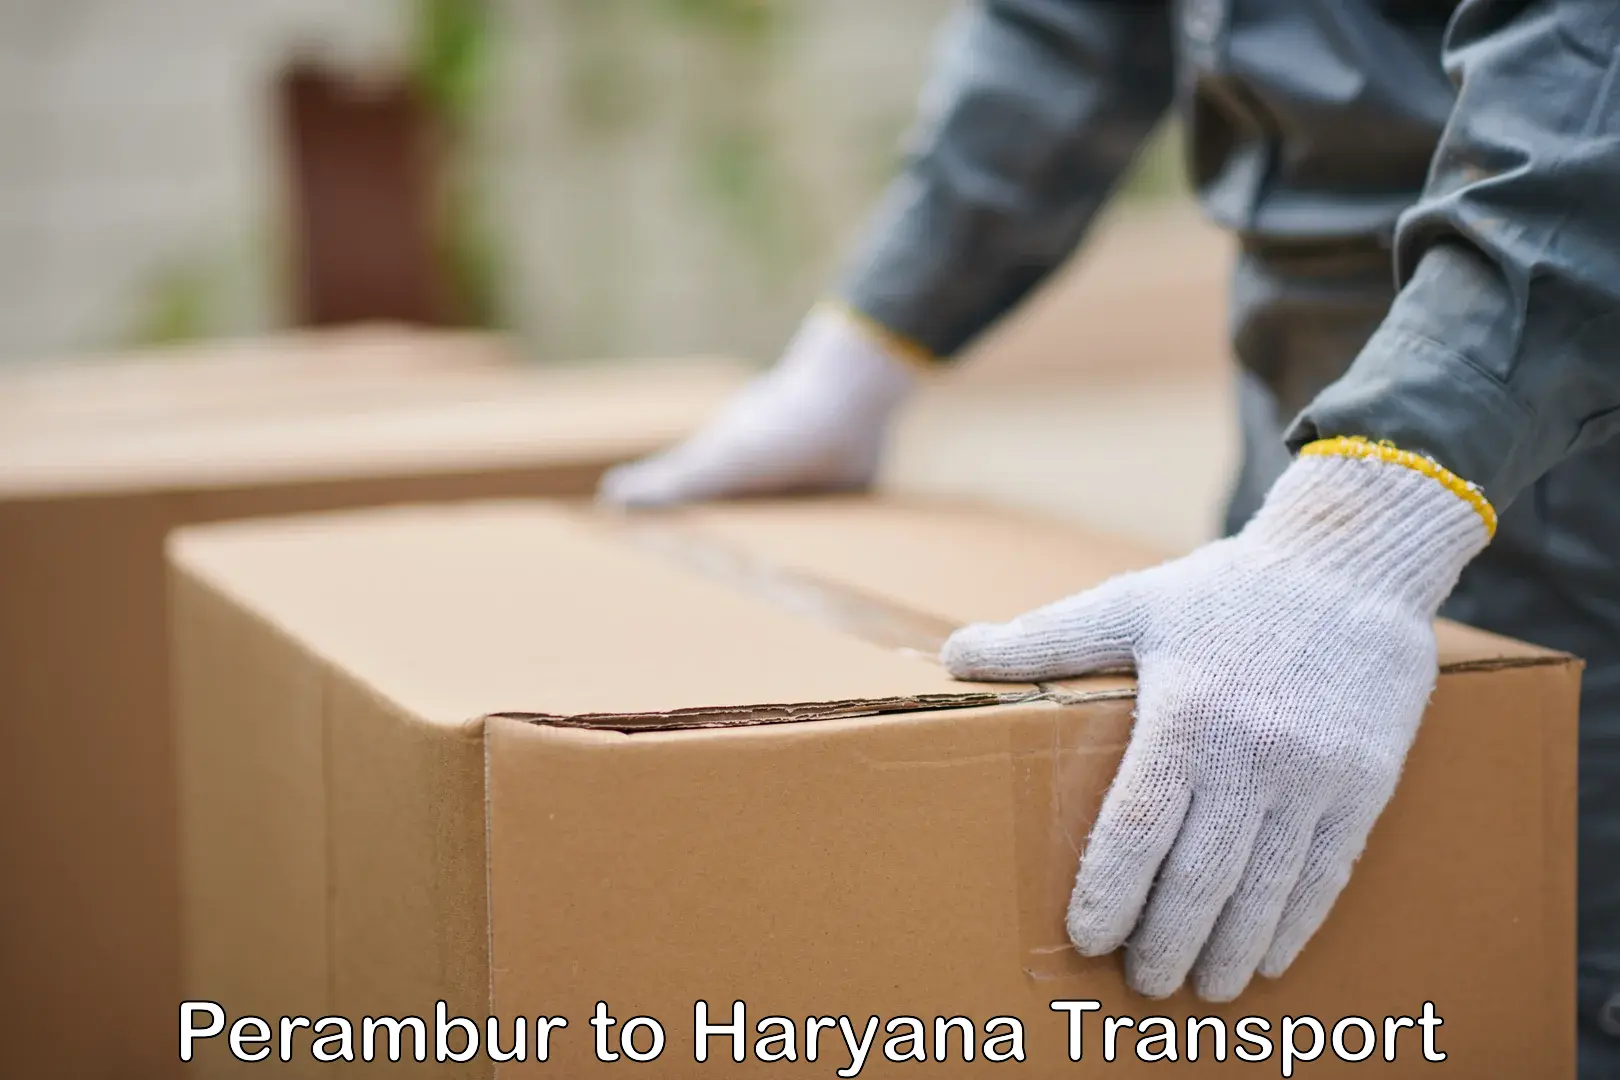 Shipping partner Perambur to Charkhi Dadri